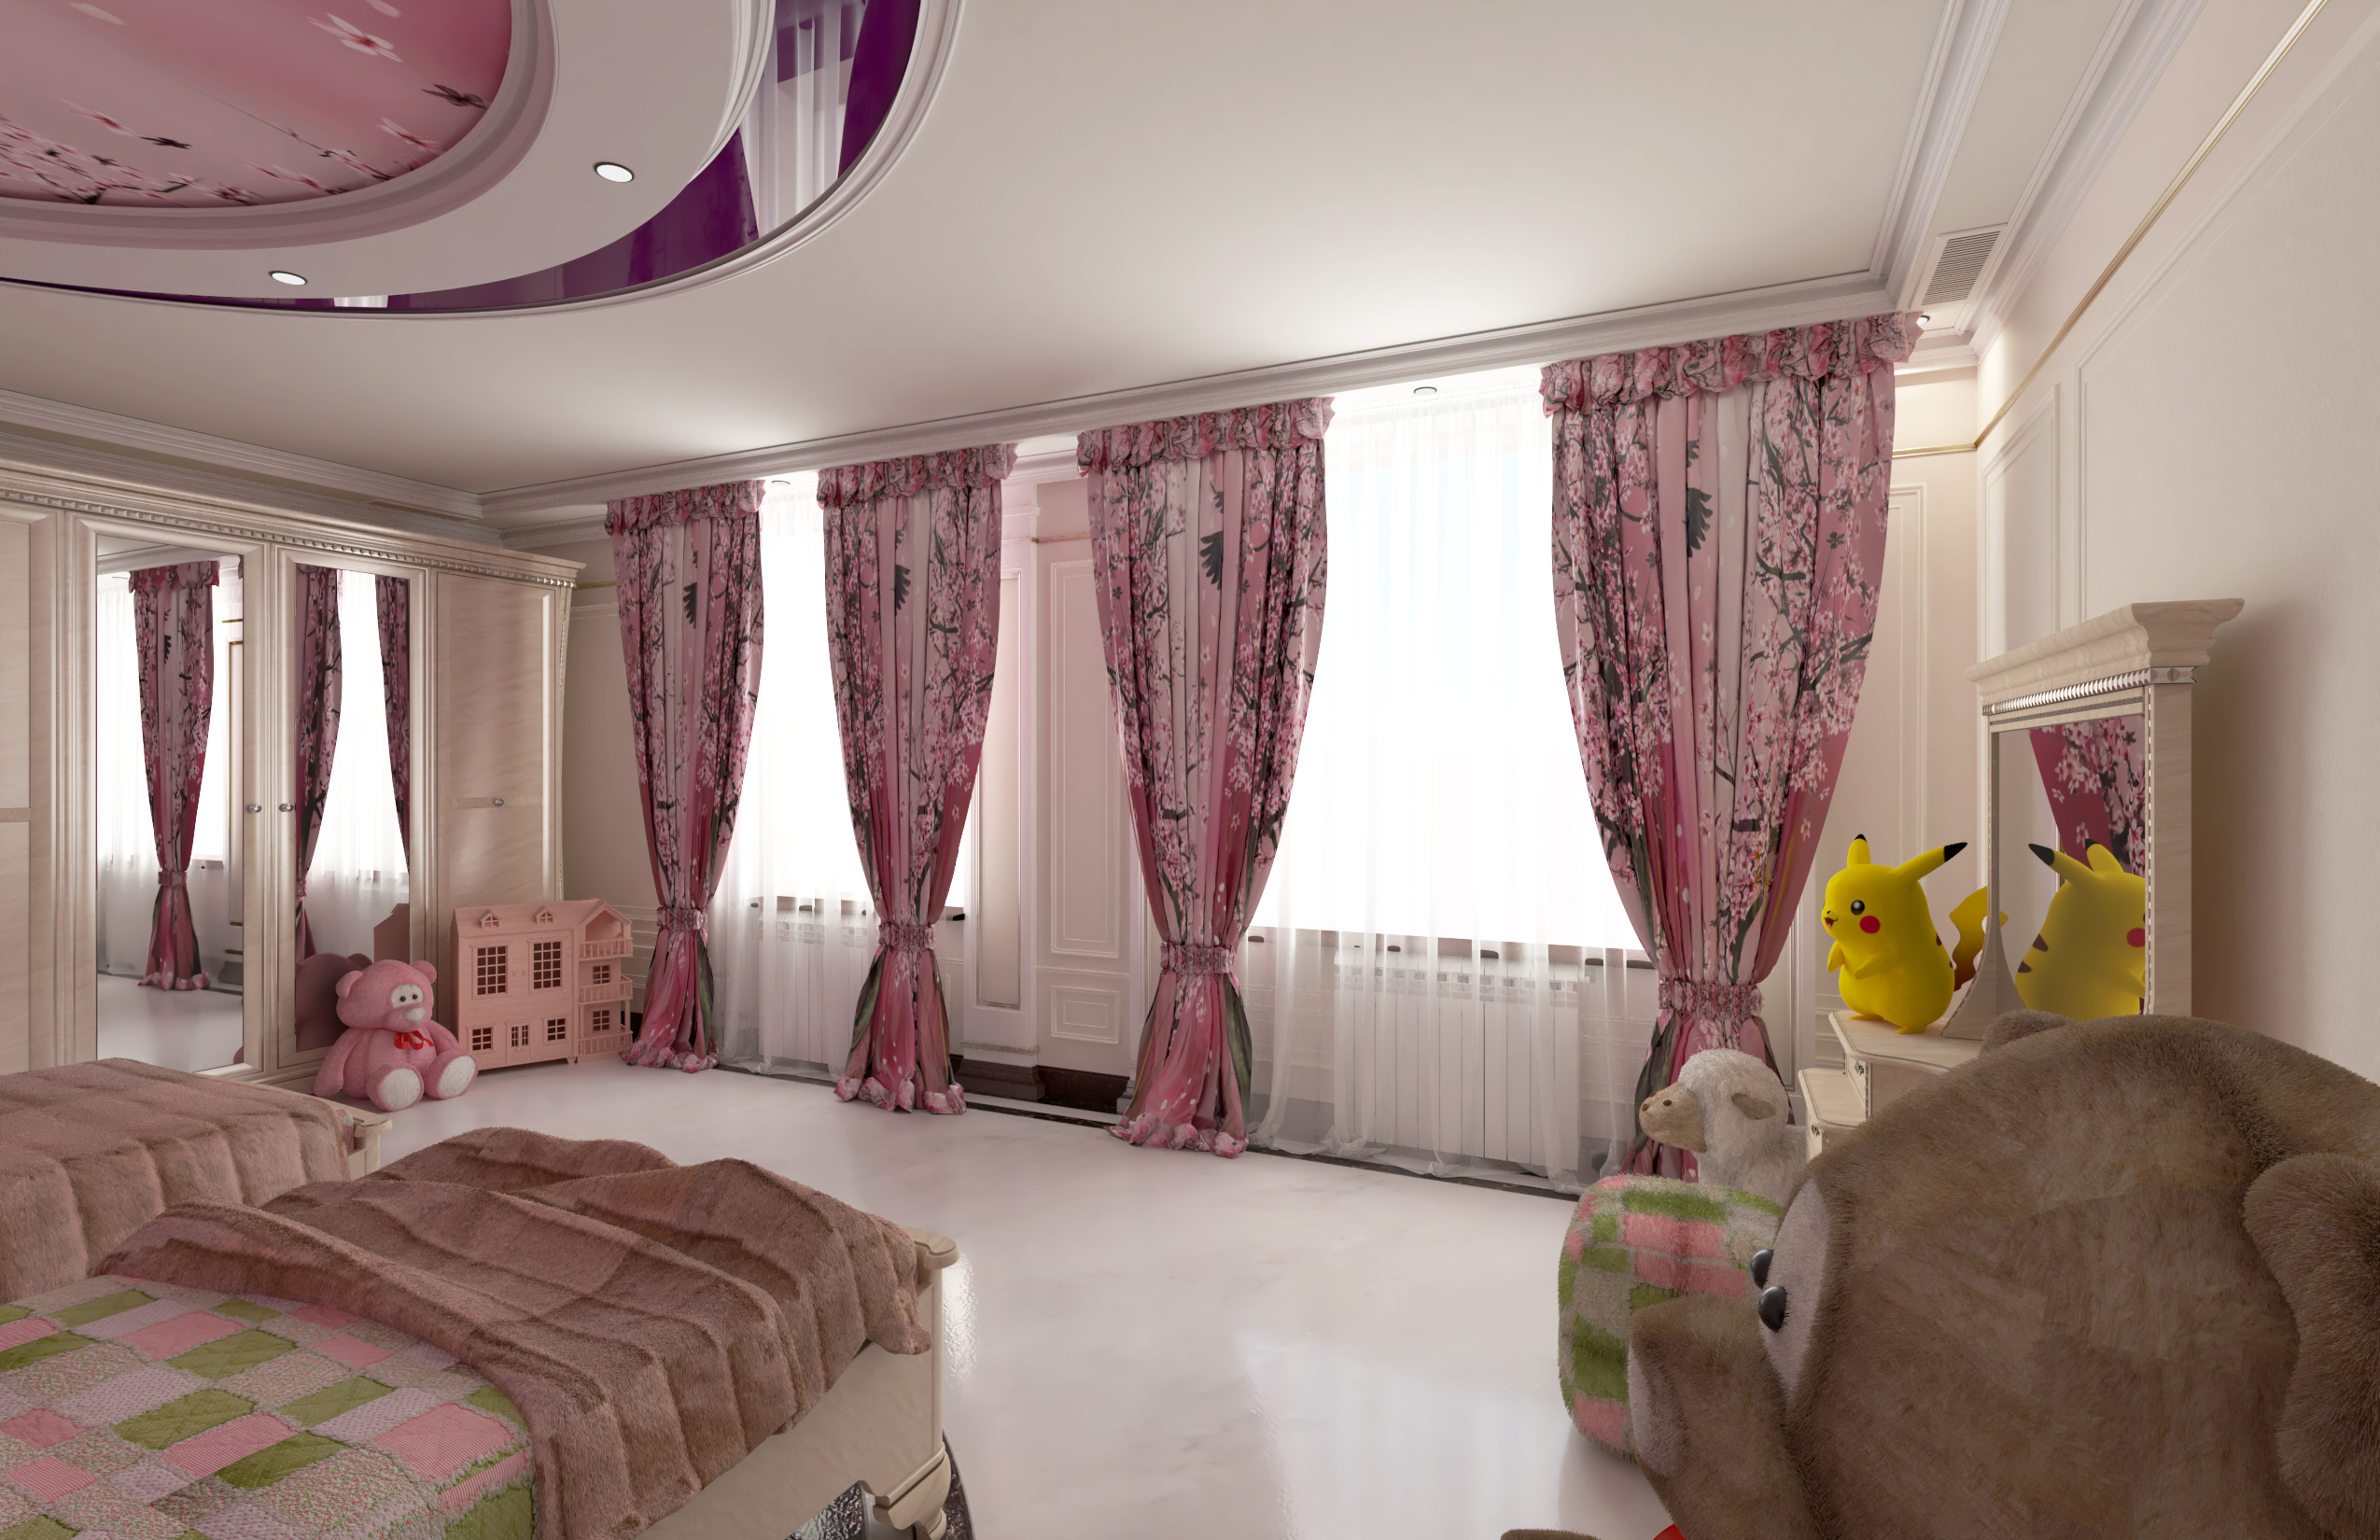 imagen de opción de dormitorio para niños número_1 en Maya vray 3.0